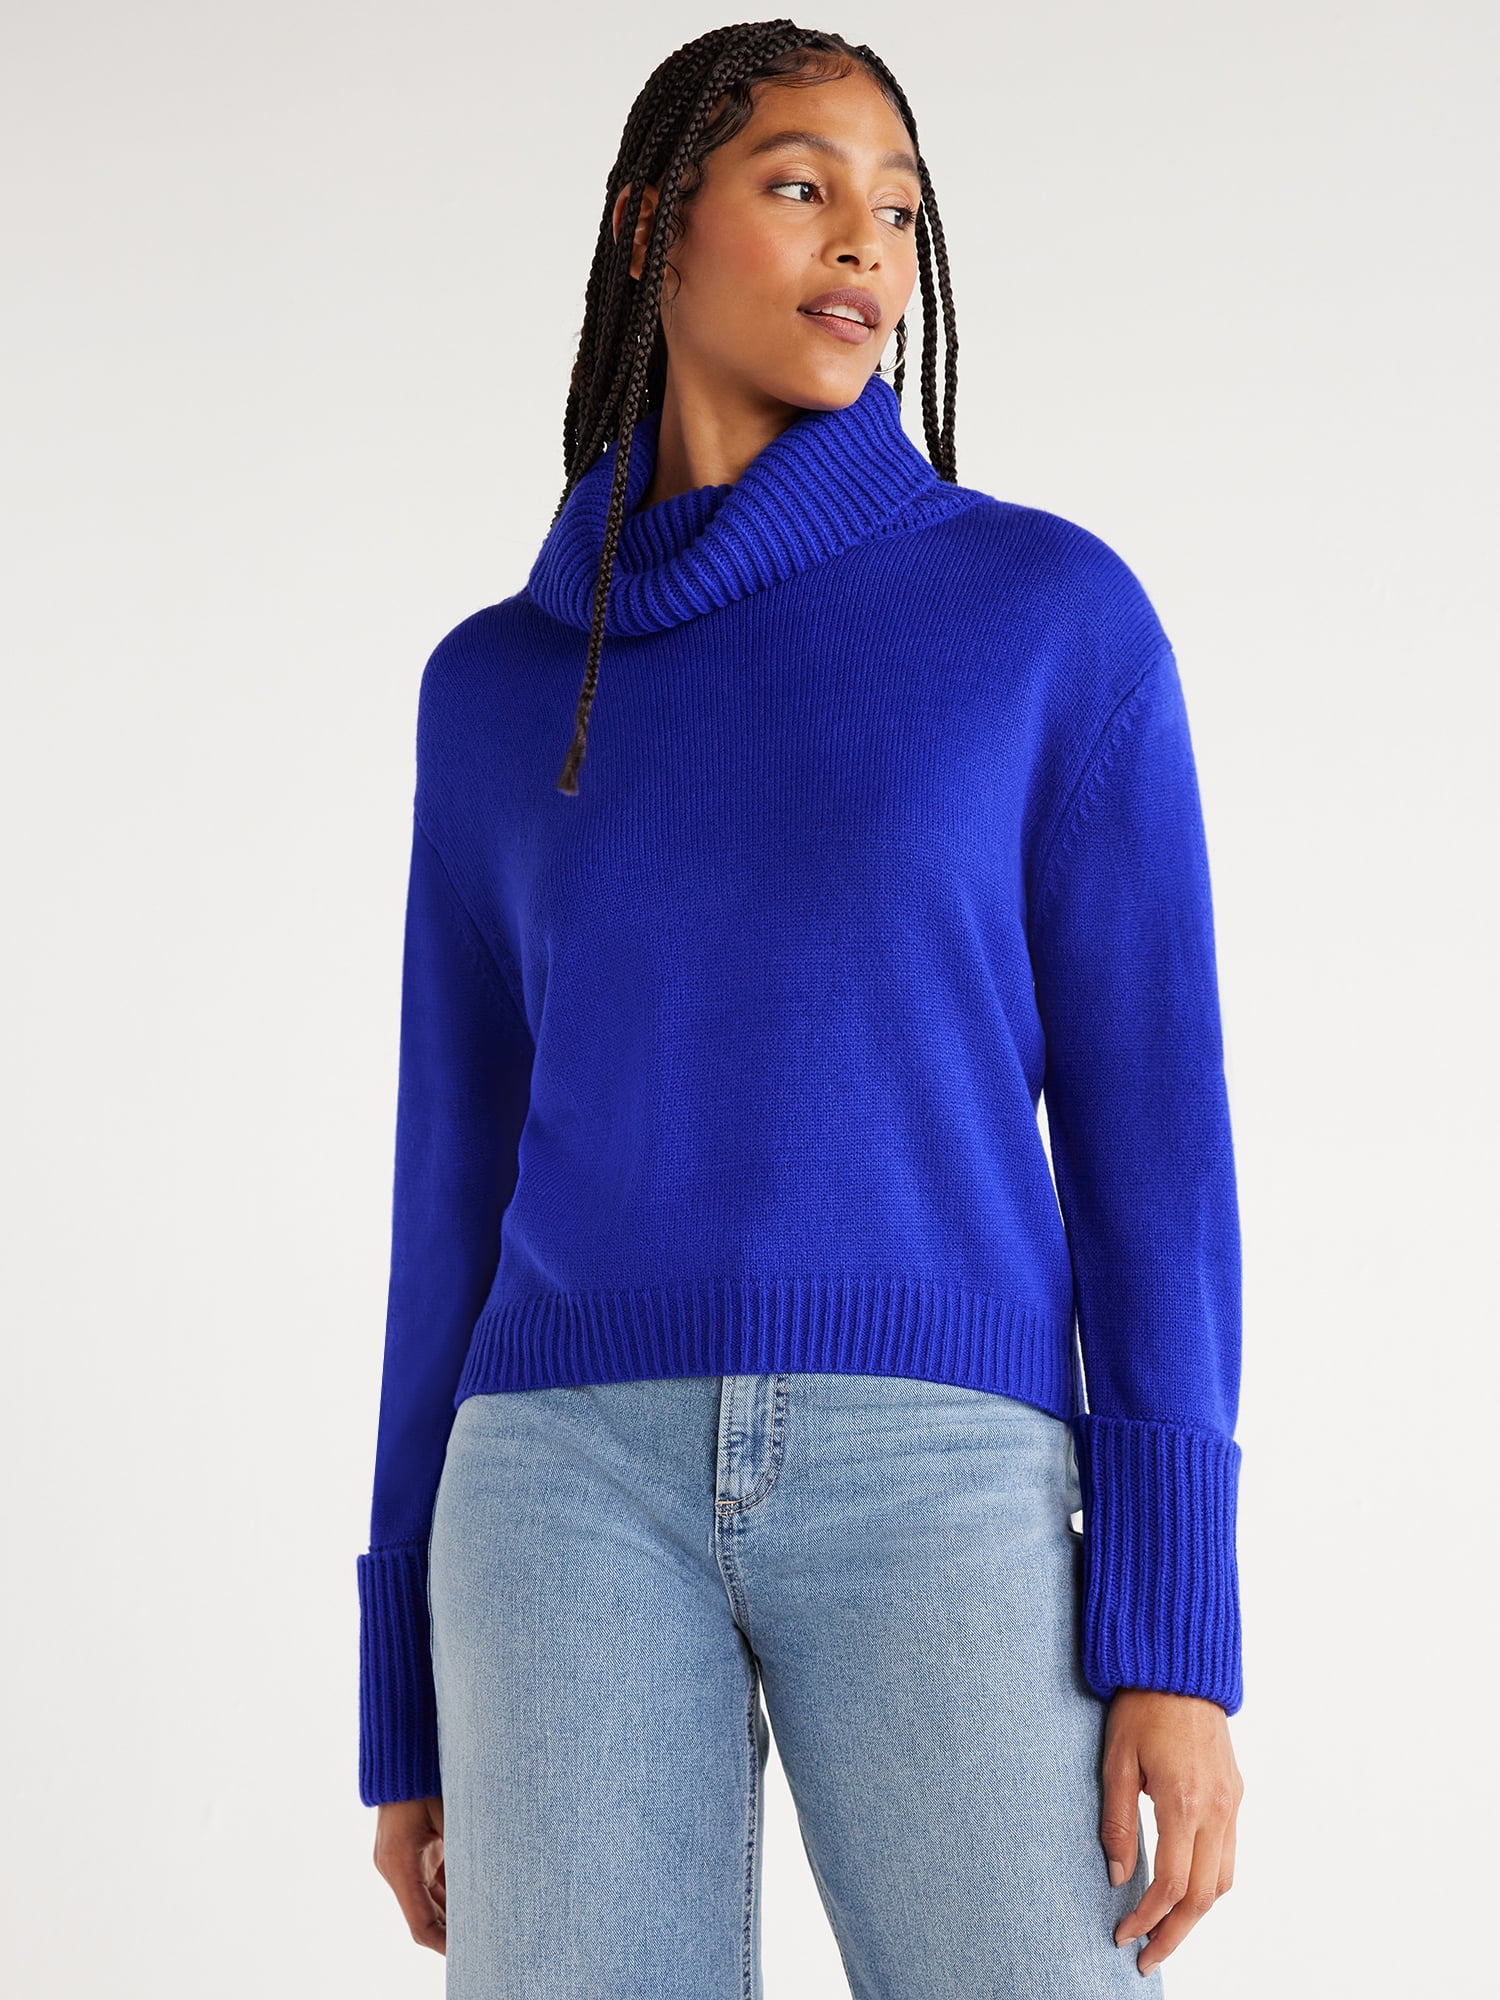 Scoop Women’s Chunky Turtleneck Sweater, Sizes XS-XXL - Walmart.com